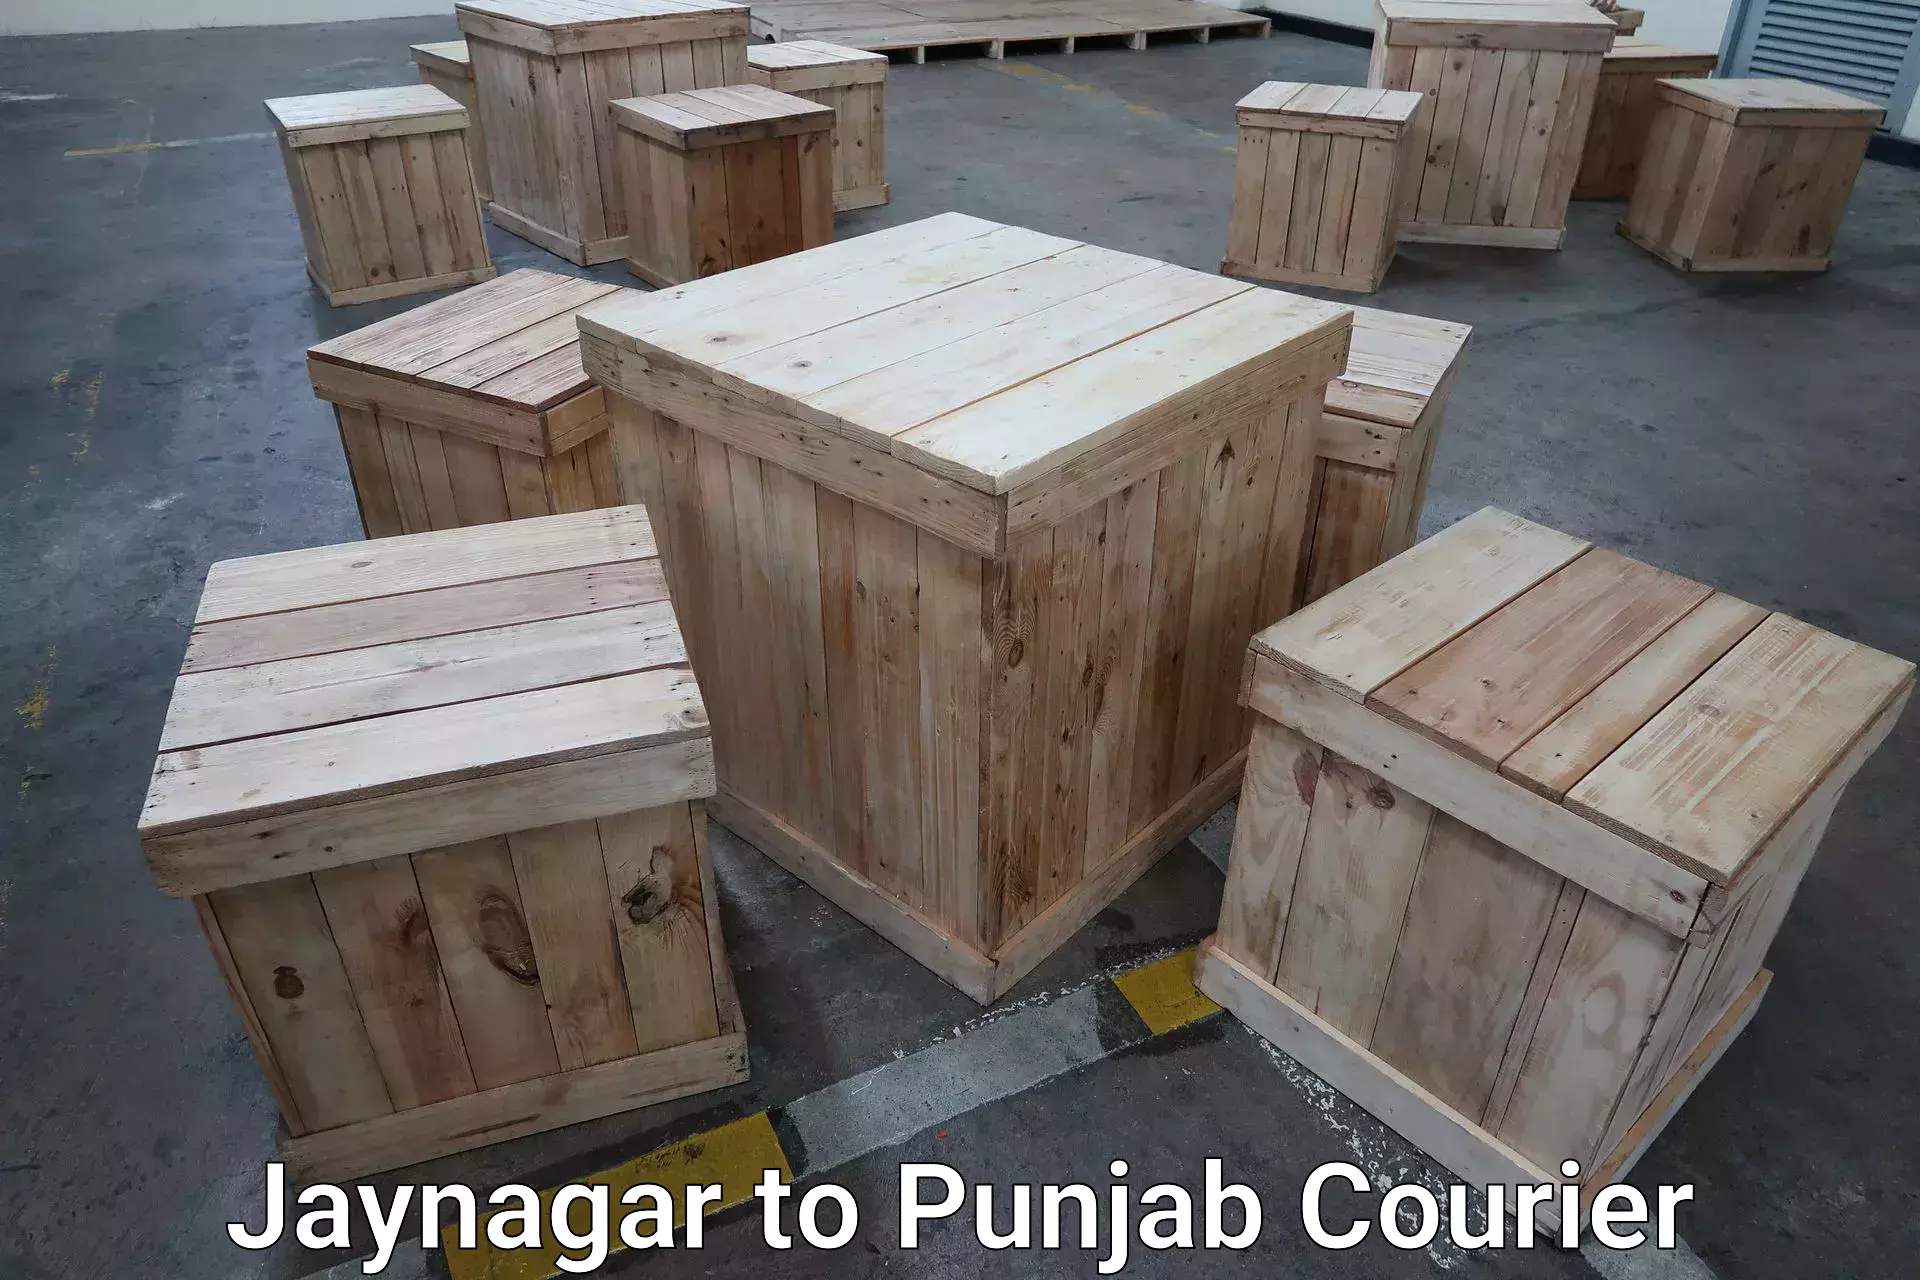 Door-to-door baggage service Jaynagar to Gurdaspur